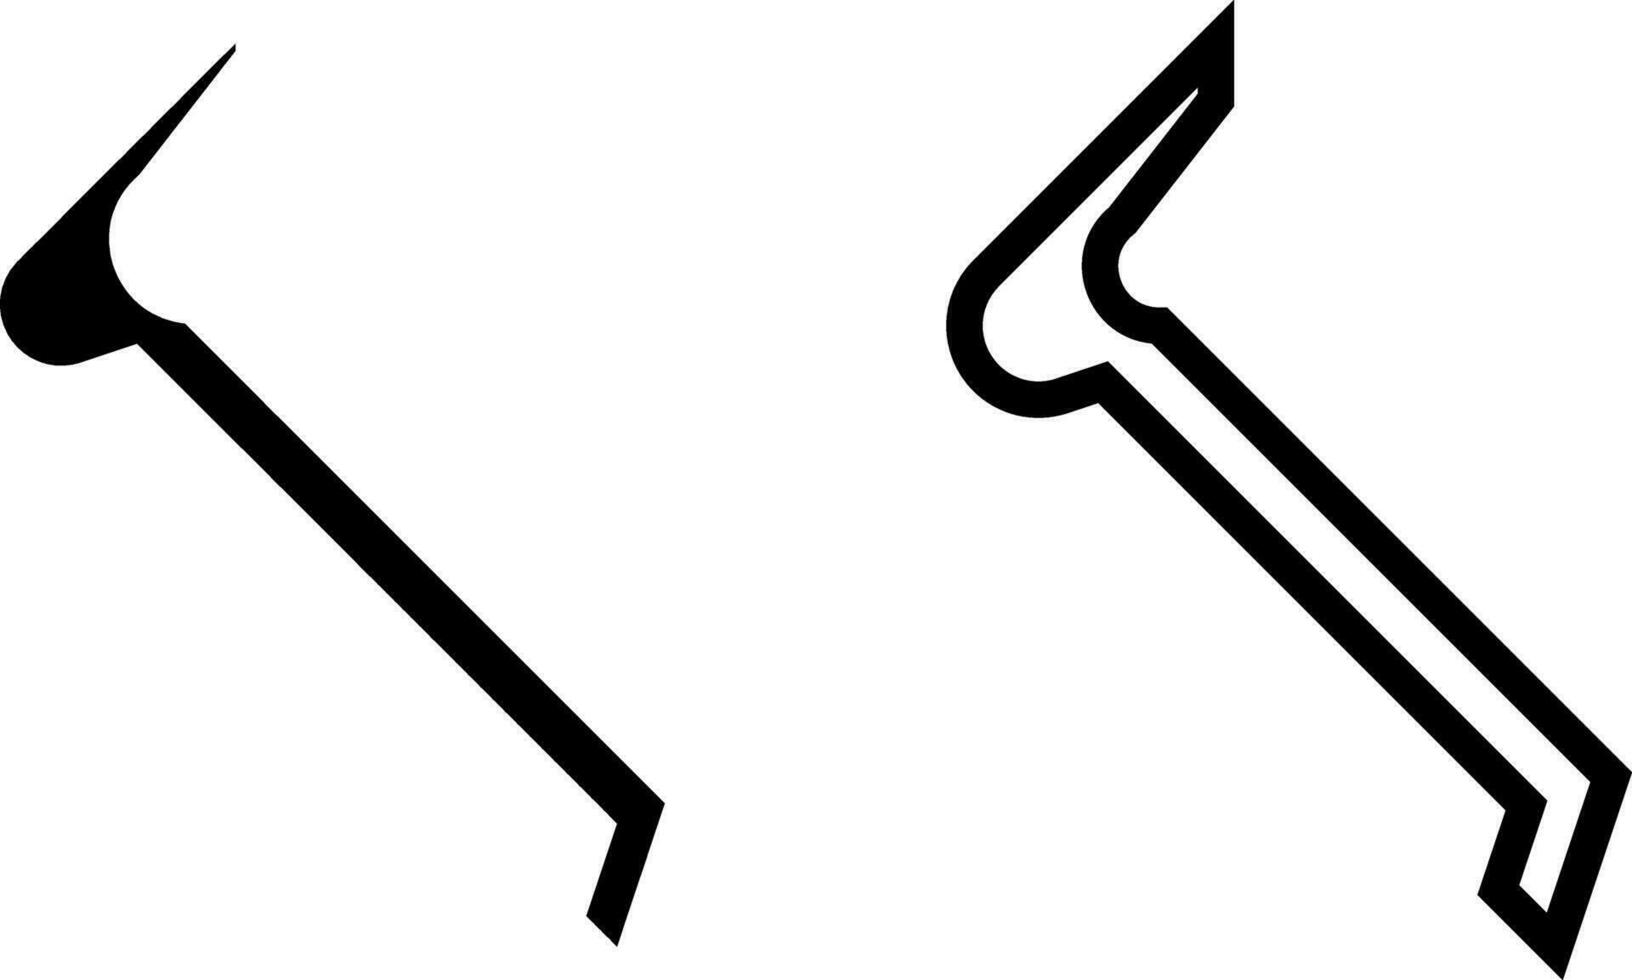 kofot ikon, tecken, eller symbol i glyf och linje stil isolerat på transparent bakgrund. vektor illustration